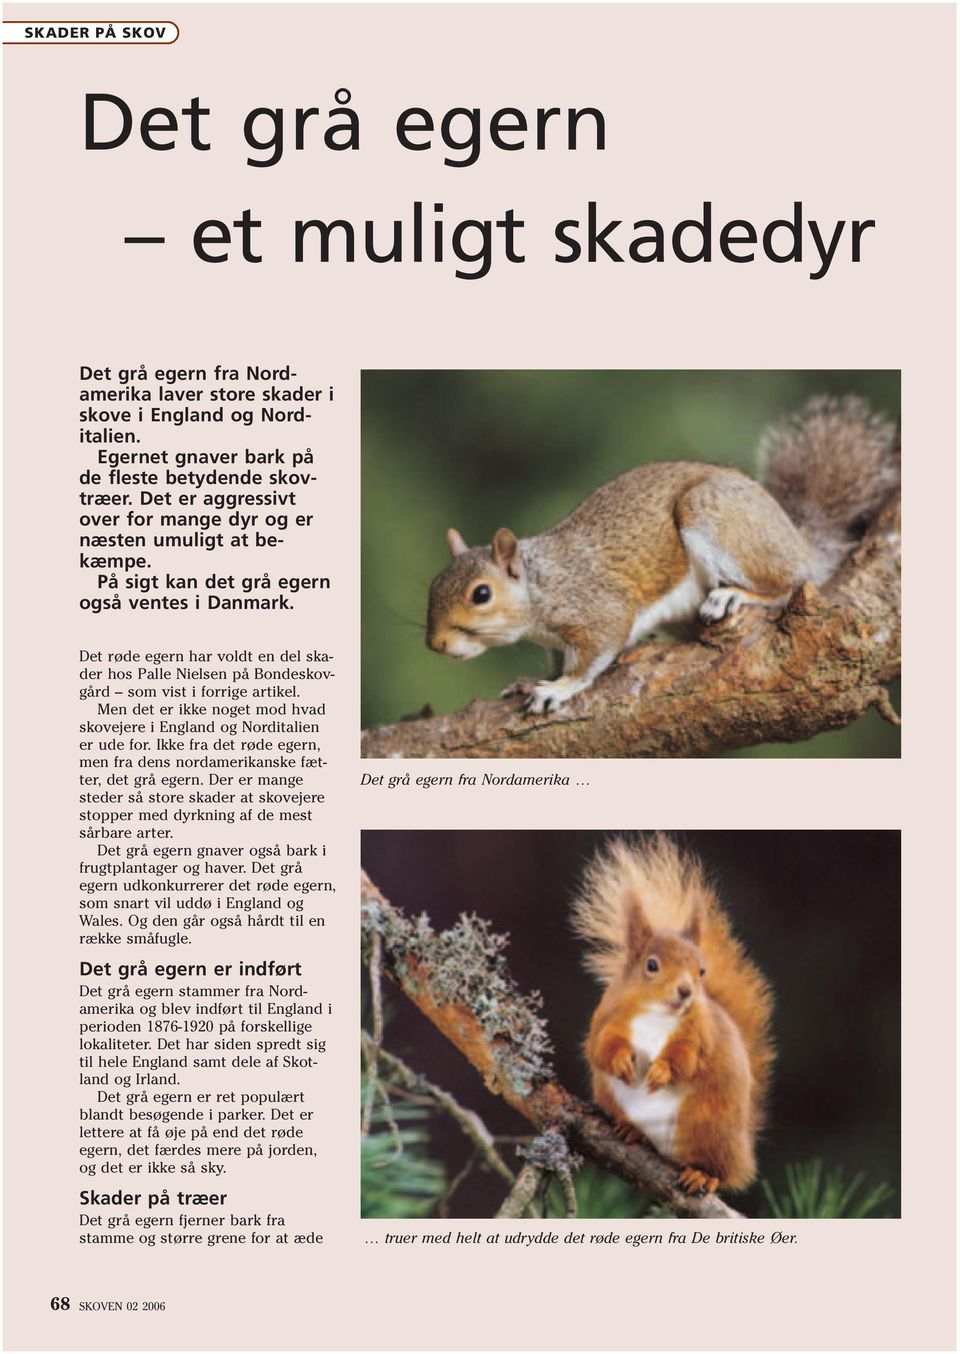 Det røde egern har voldt en del skader hos Palle Nielsen på Bondeskovgård som vist i forrige artikel. Men det er ikke noget mod hvad skovejere i England og Norditalien er ude for.